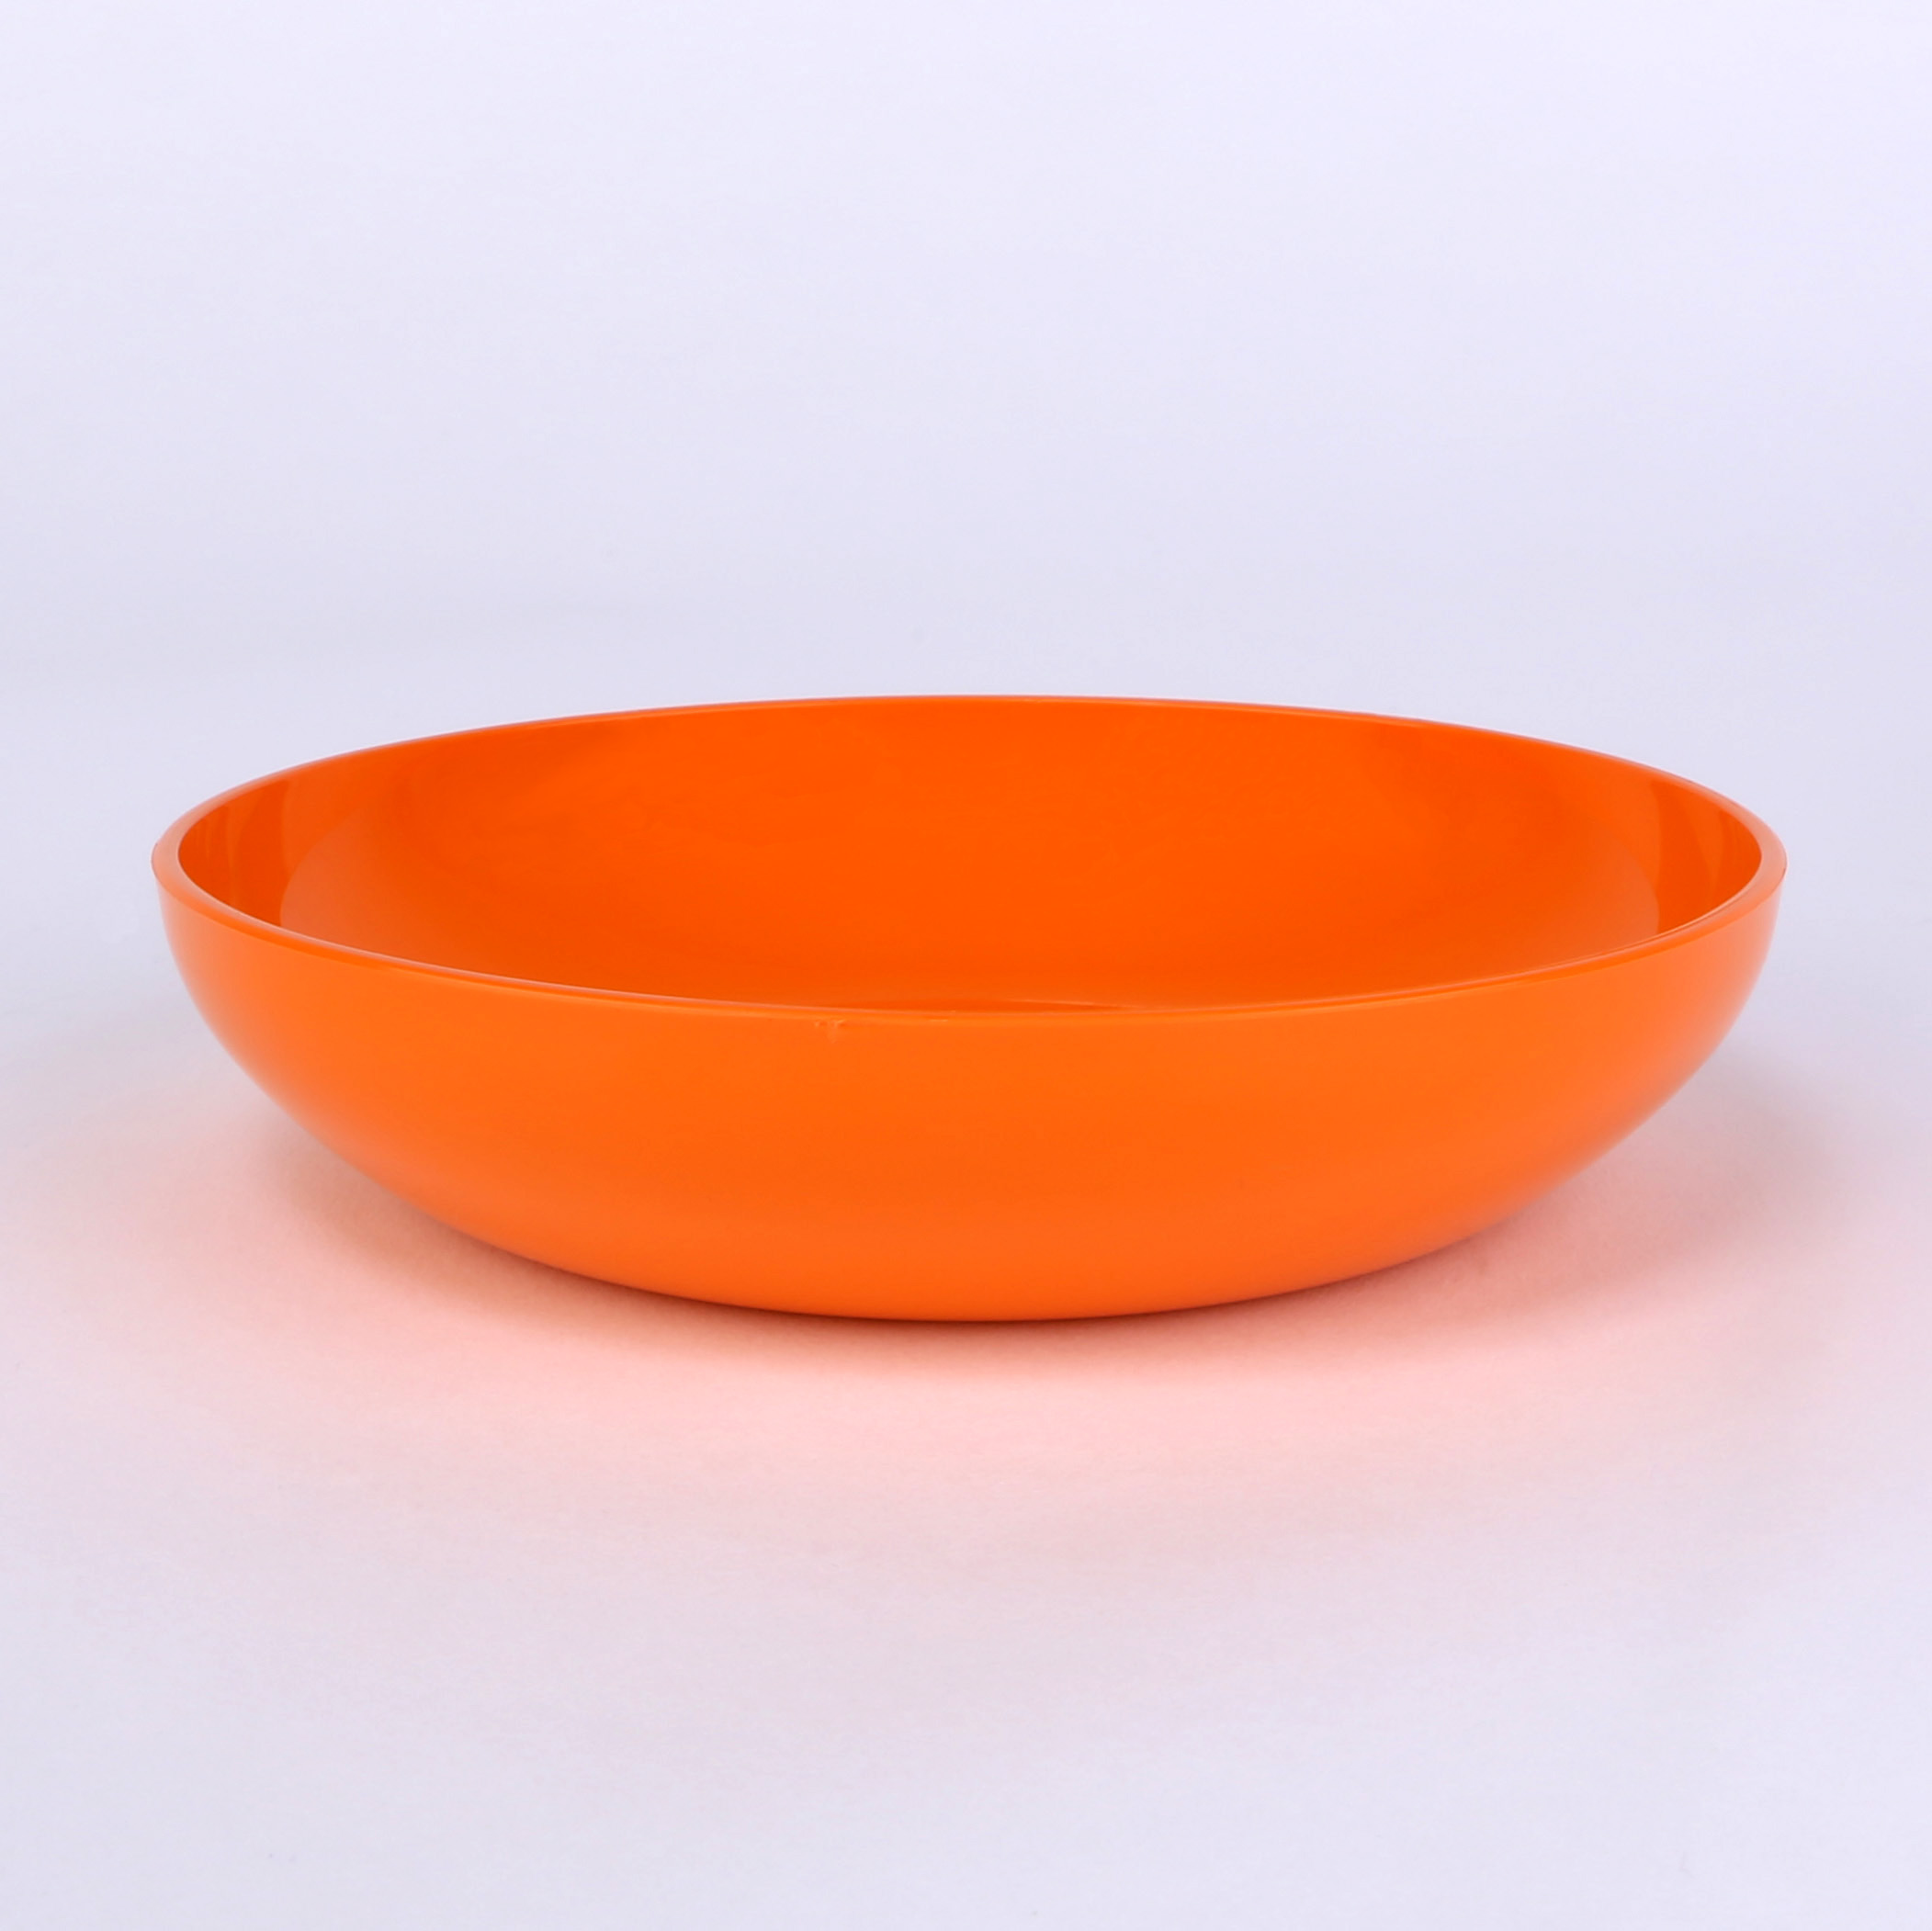 vaLon Zephyr Flache Dessertschale 13,5 L aus schadstofffreiem Kunststoff in der Farbe orange.